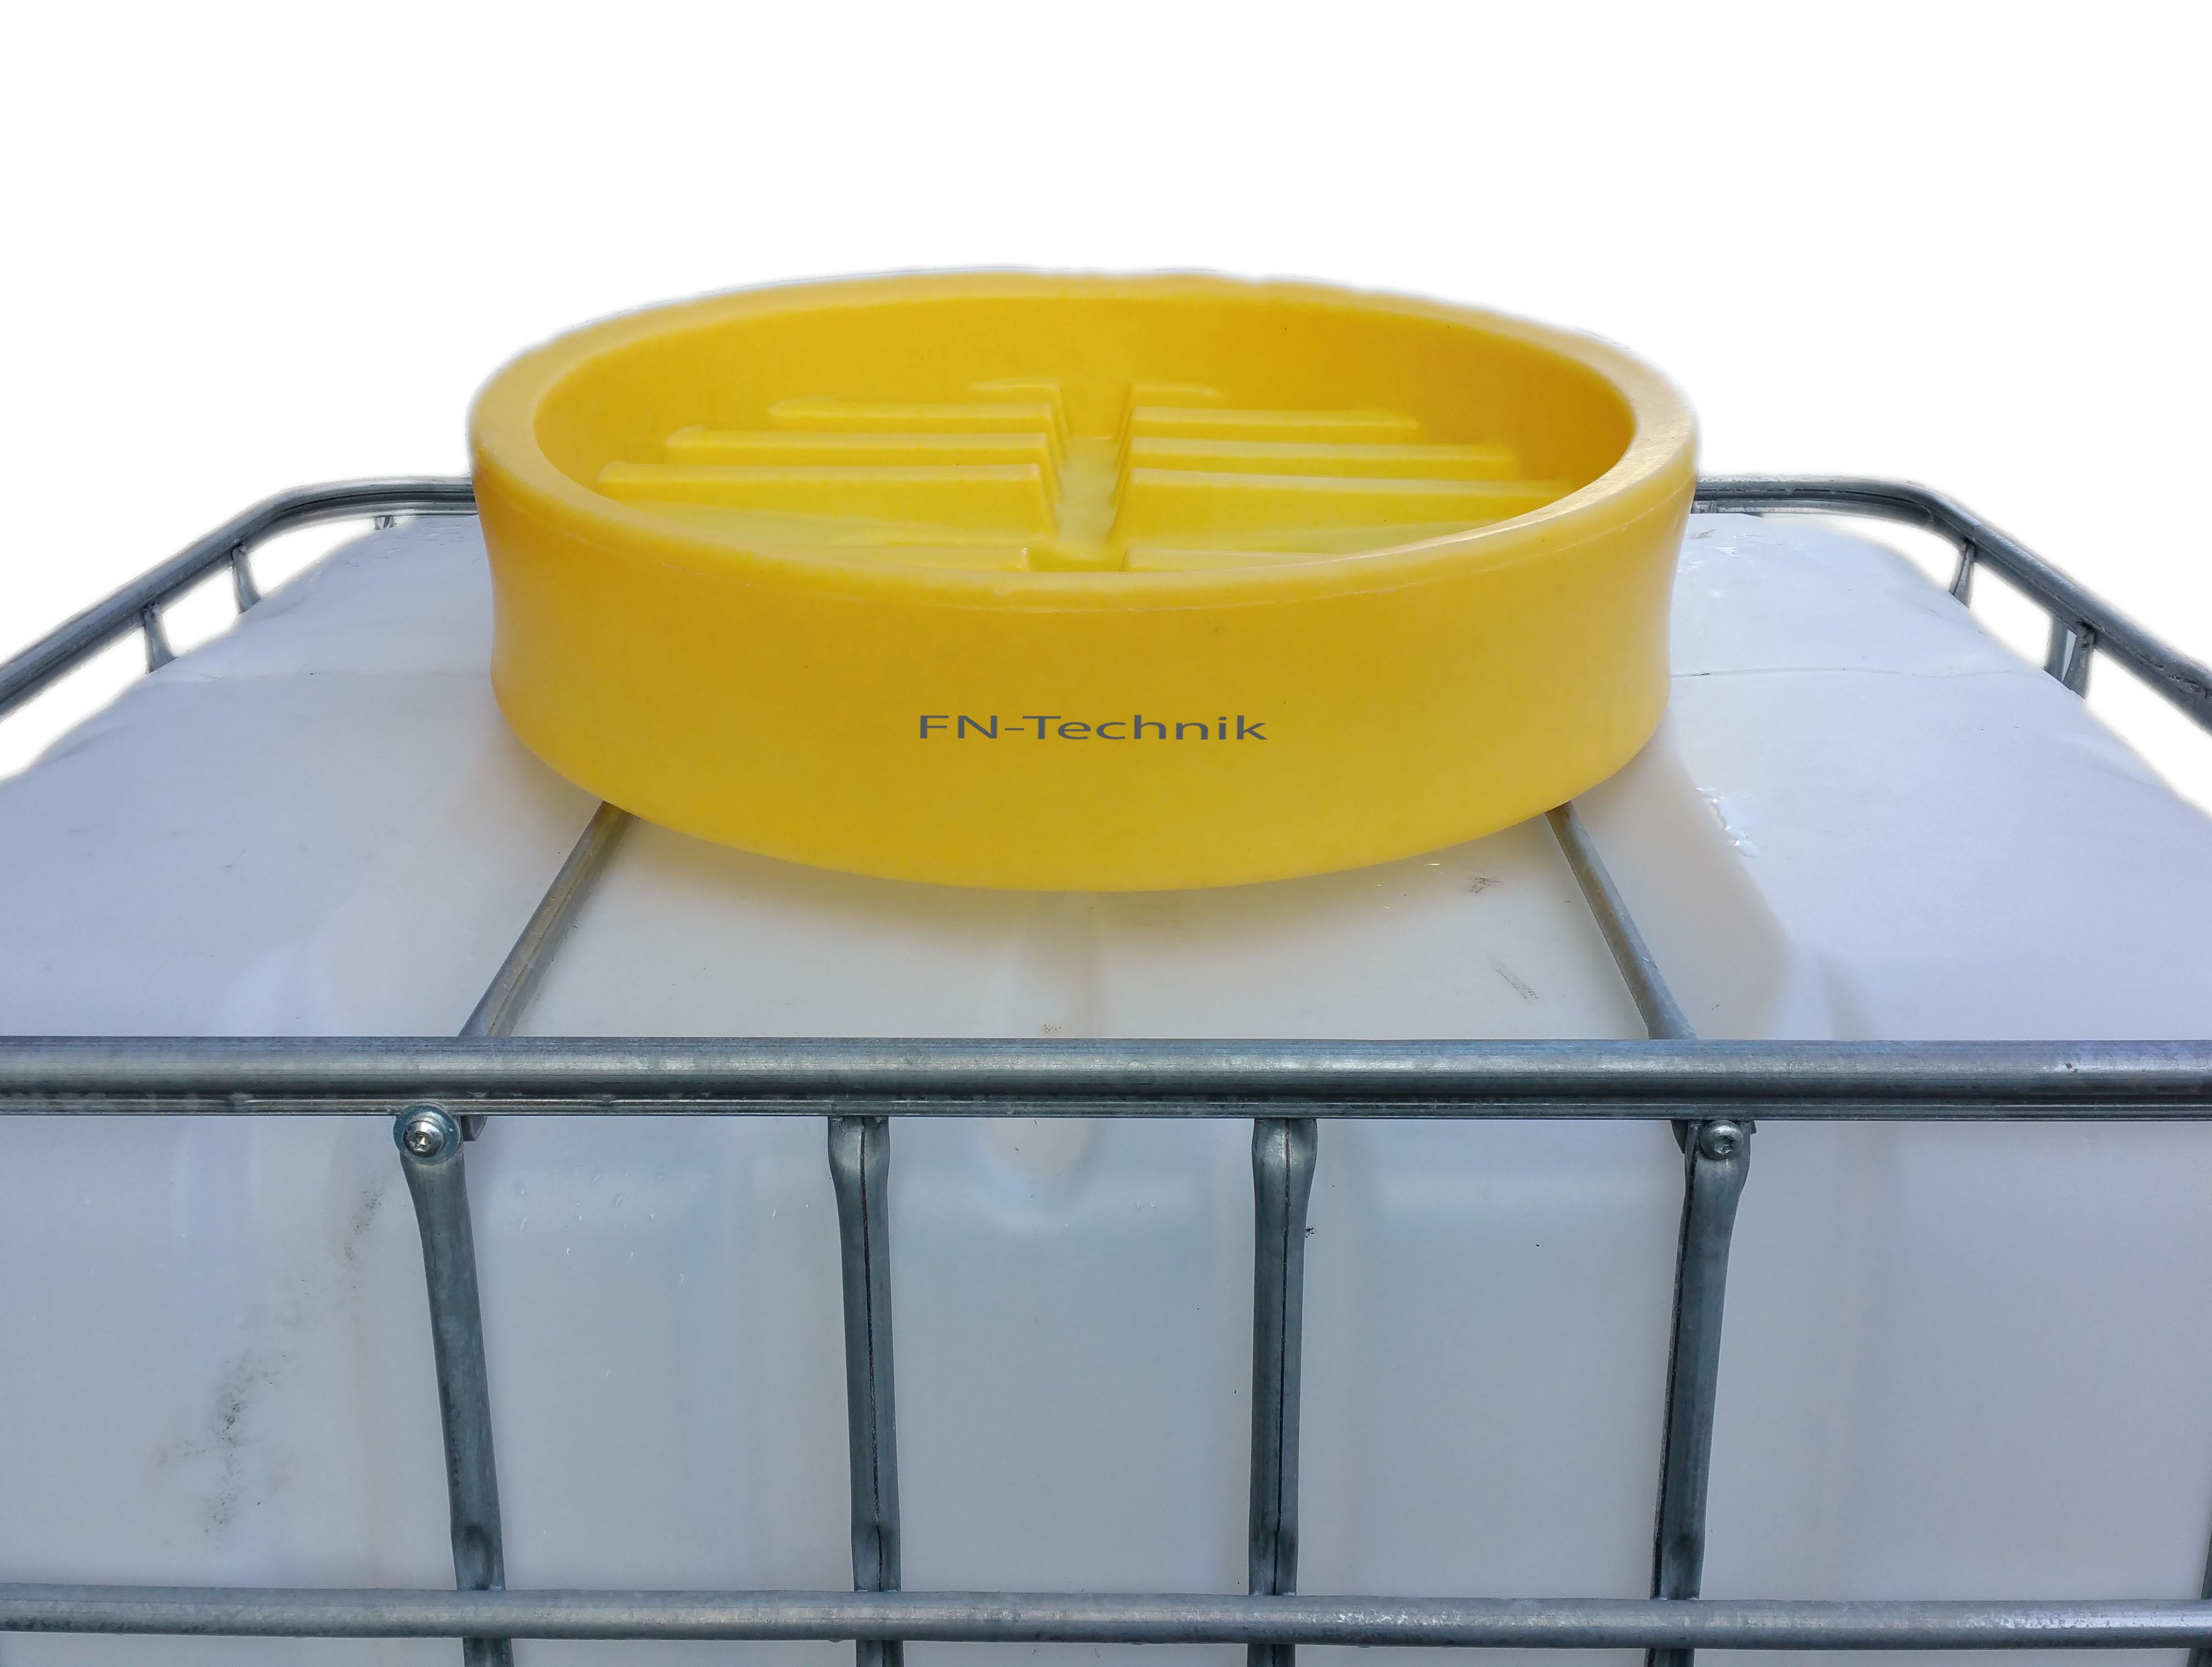 IBC Container Trichter Einf&uuml;llhilfe mit Deckel

zum sicheren und umweltfreundlichen bef&uuml;llen von IBC Containern